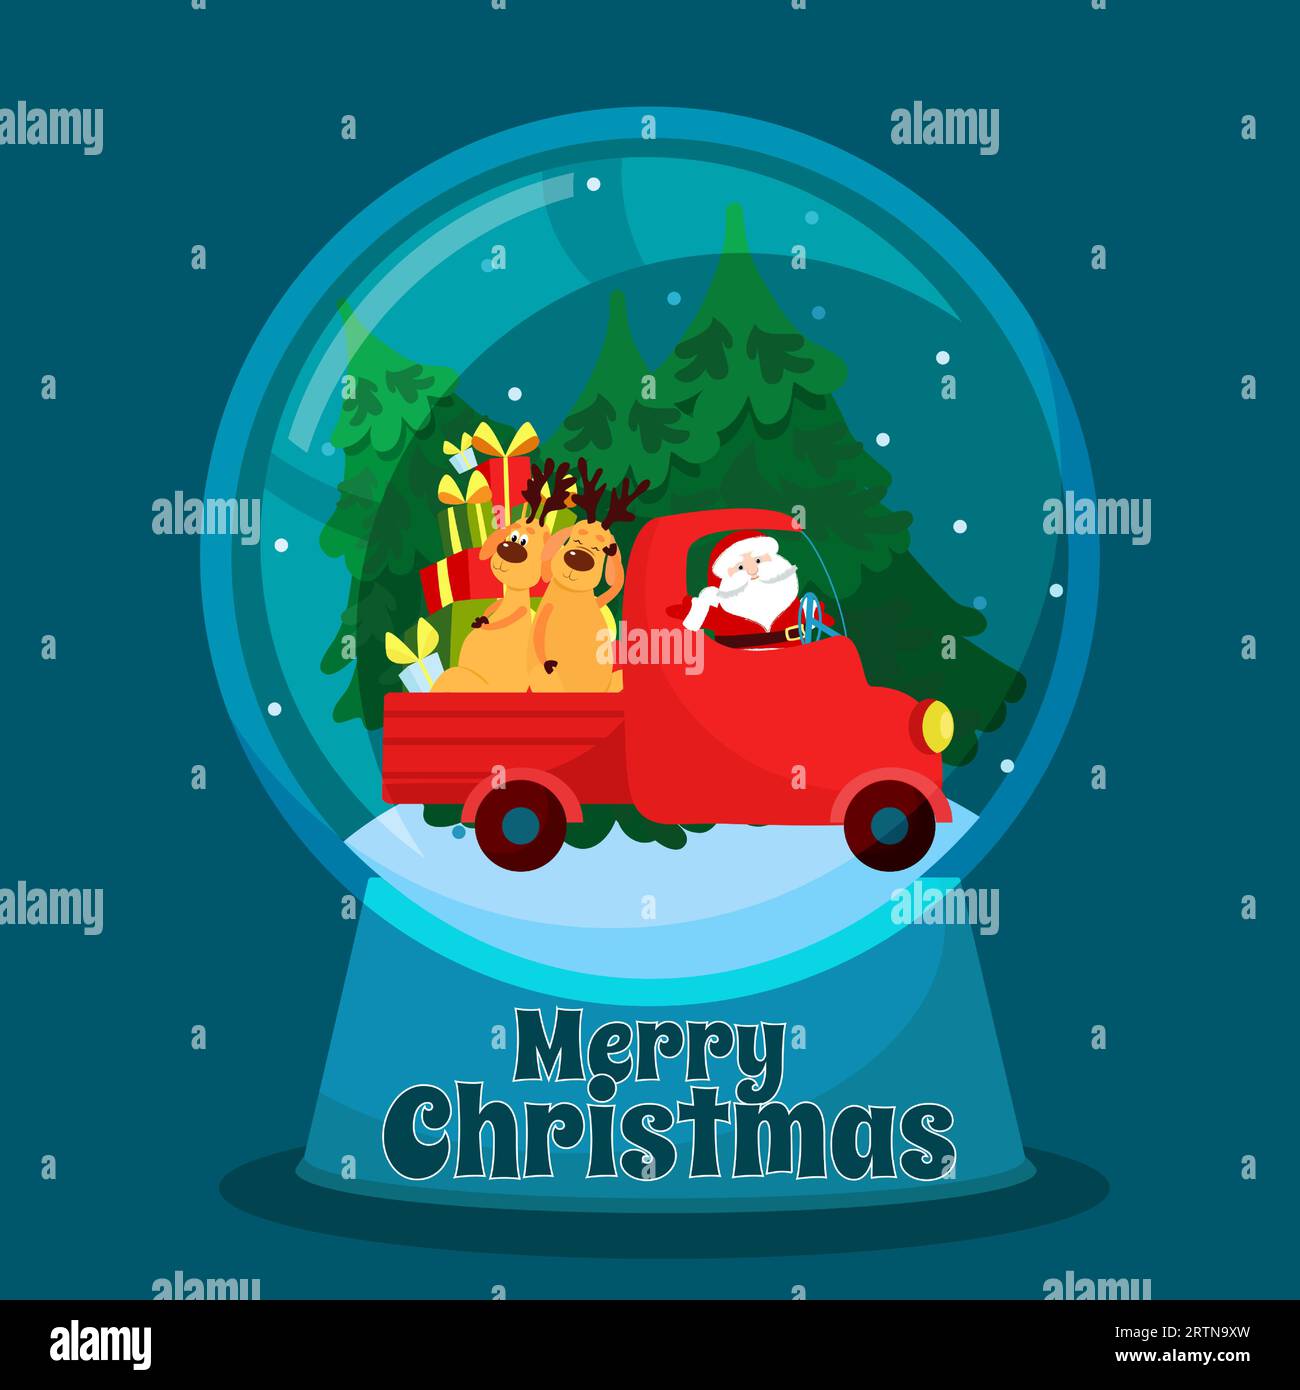 Der Weihnachtsmann fährt einen Lkw mit Rentieren und Tannen. Weihnachtsszene in einer Glasschale. Weihnachtsgrüßvektorkarte. Stock Vektor